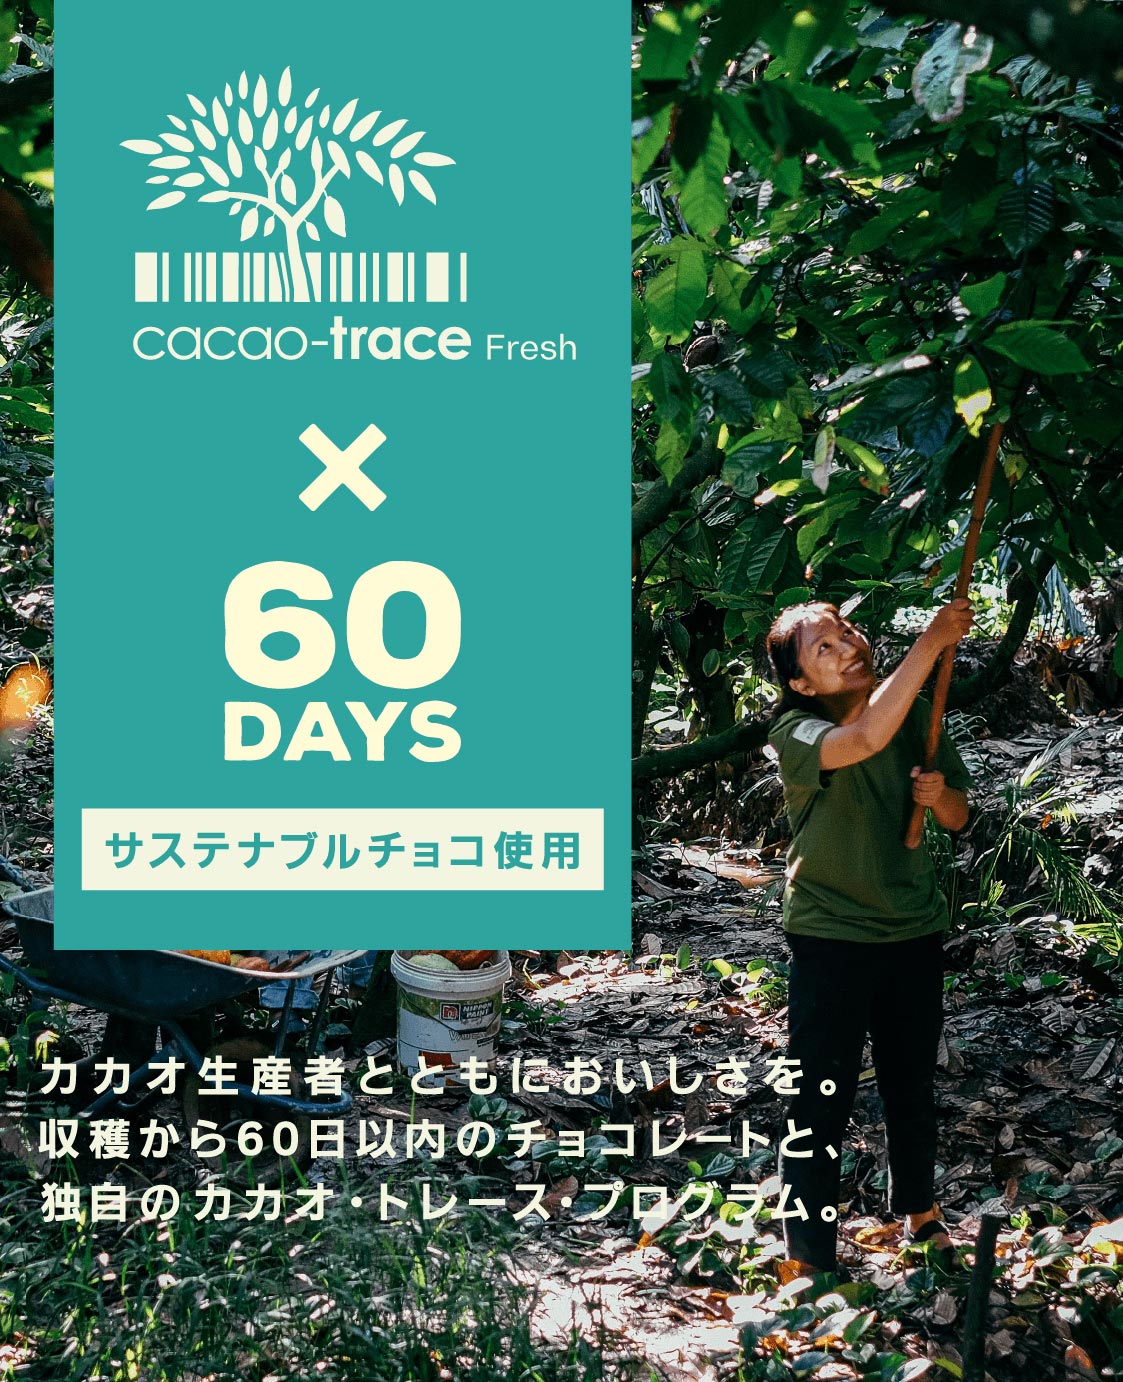 cacao-trace Fresh × 60DAYS サステナブルチョコ使用 カカオ生産者とともにおいしさを。収穫から60日以内のチョコレートと、独自のカカオ・トレース・プログラム。